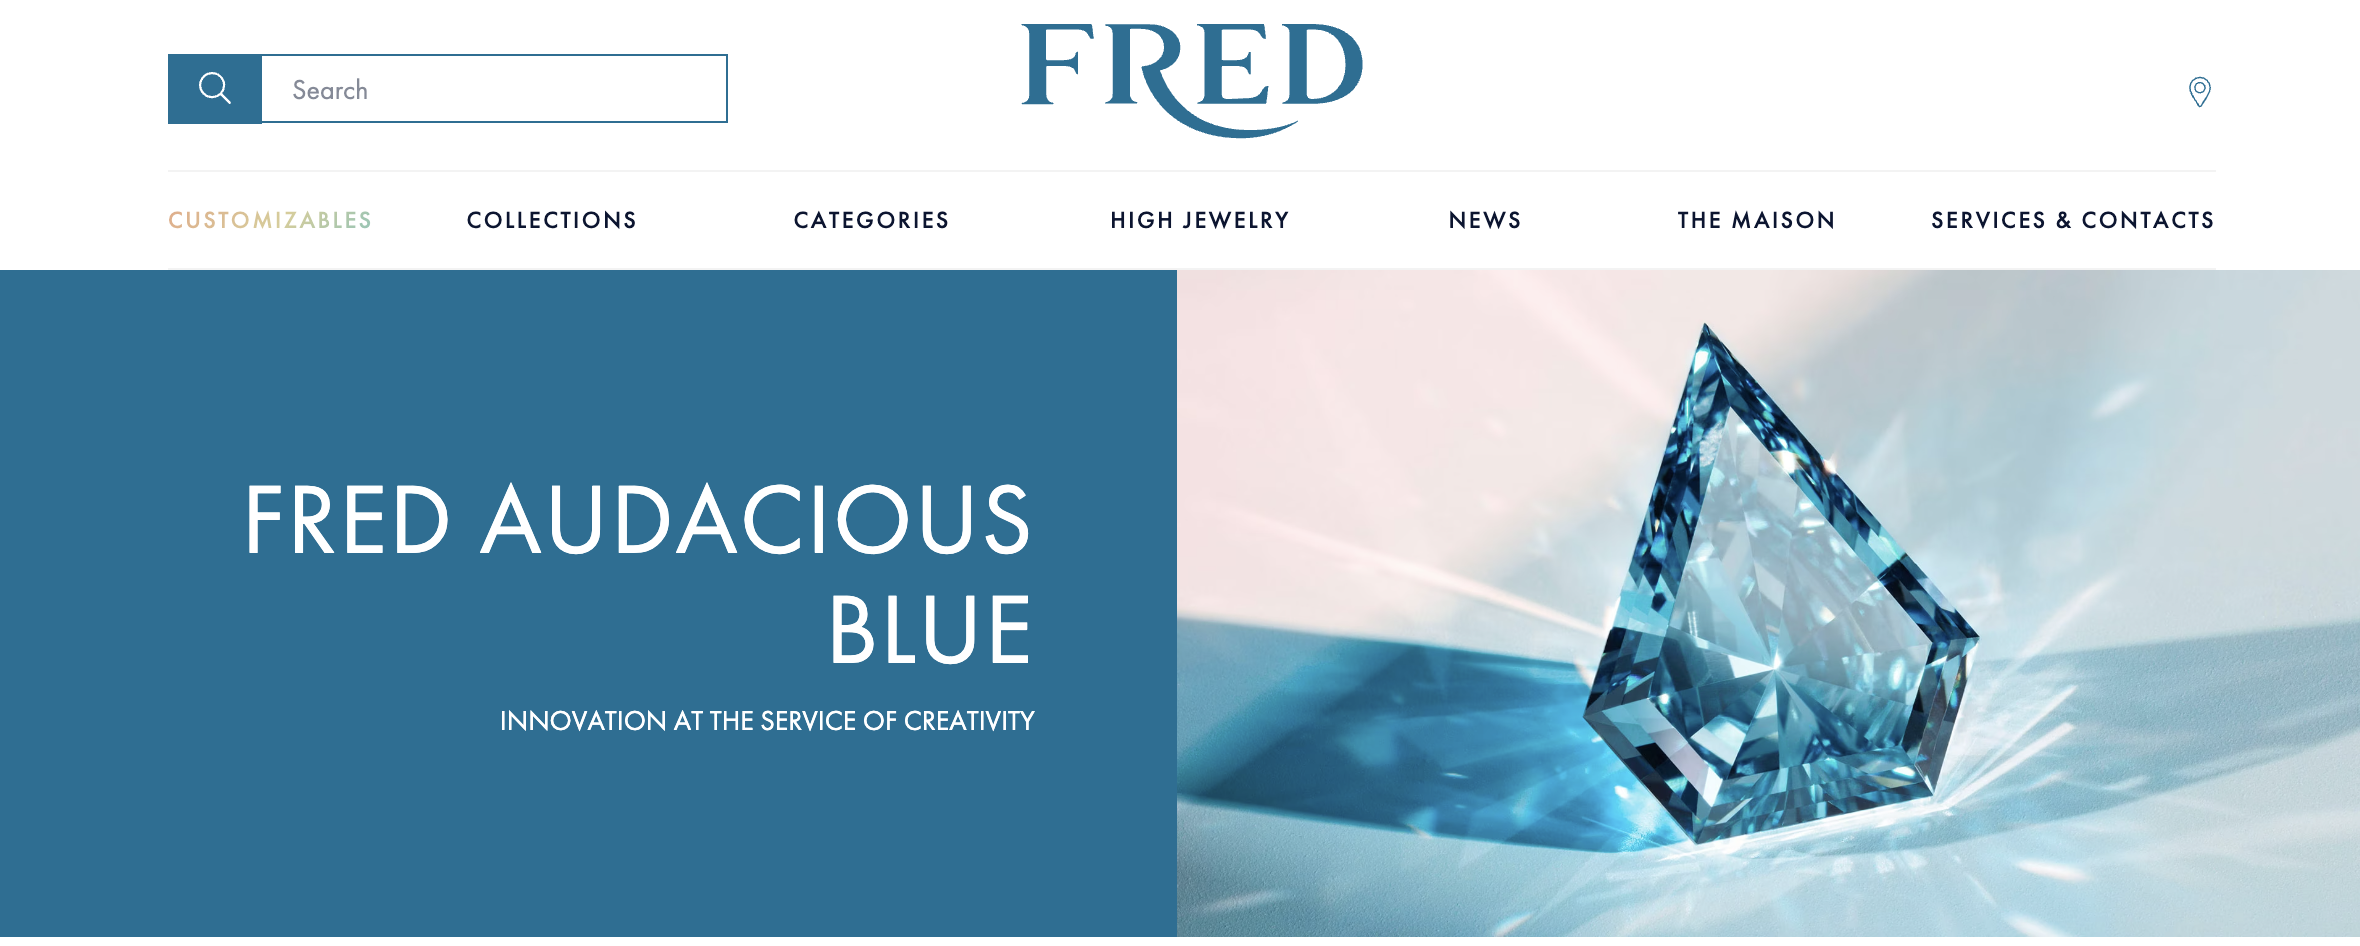 法国现代珠宝品牌 FRED 推出首颗培育钻石及高珠系列